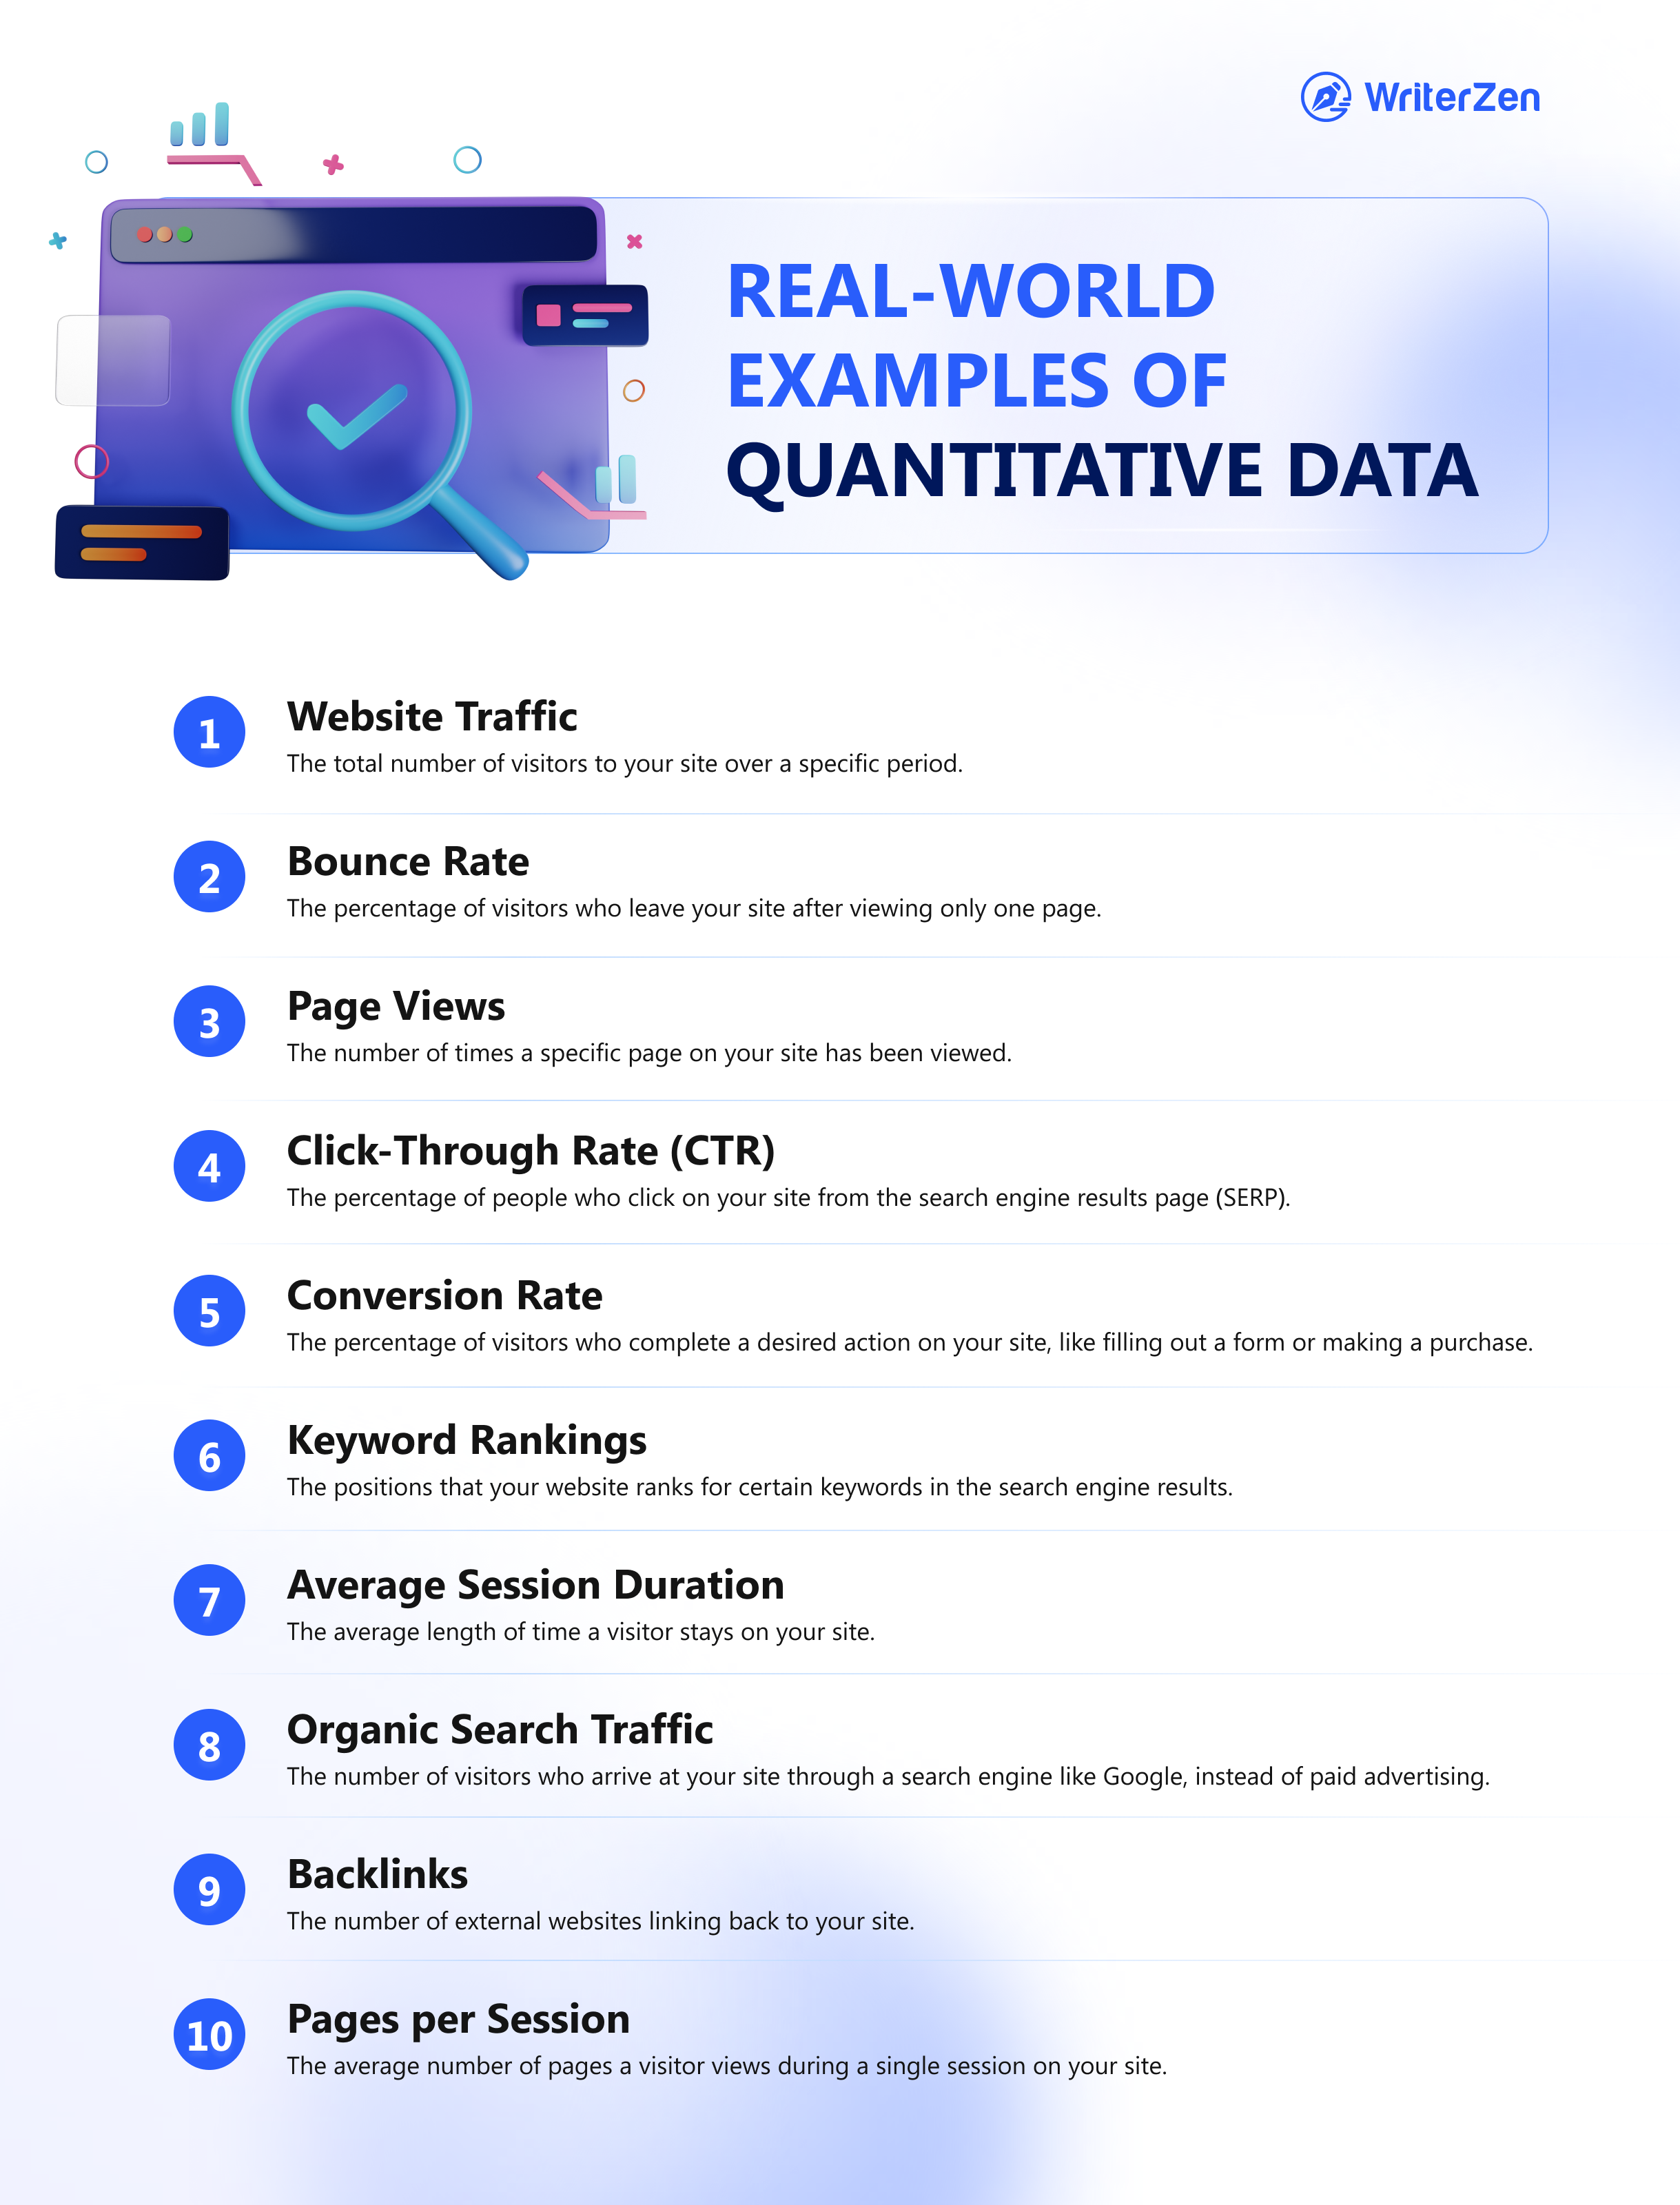 Examples of Quantitative Data